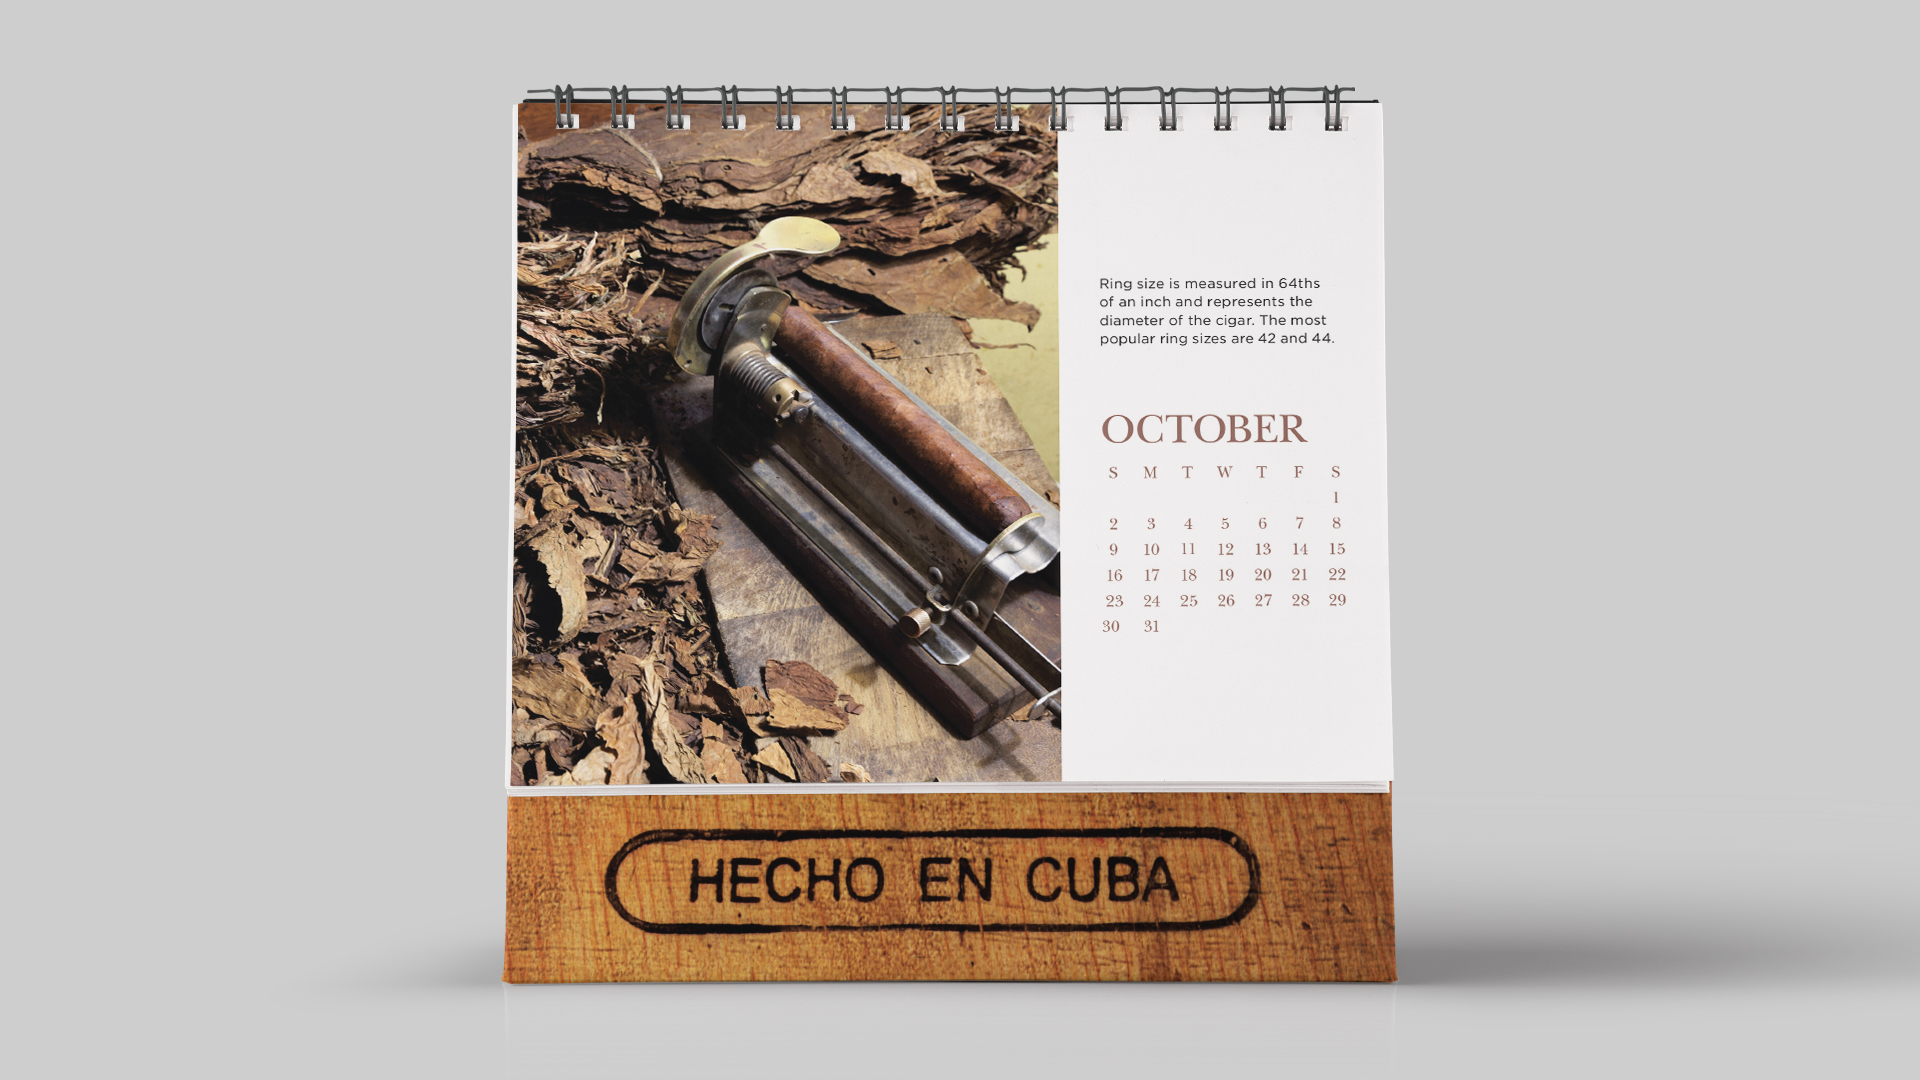 Made in Cuba History of Cigars Calendar October